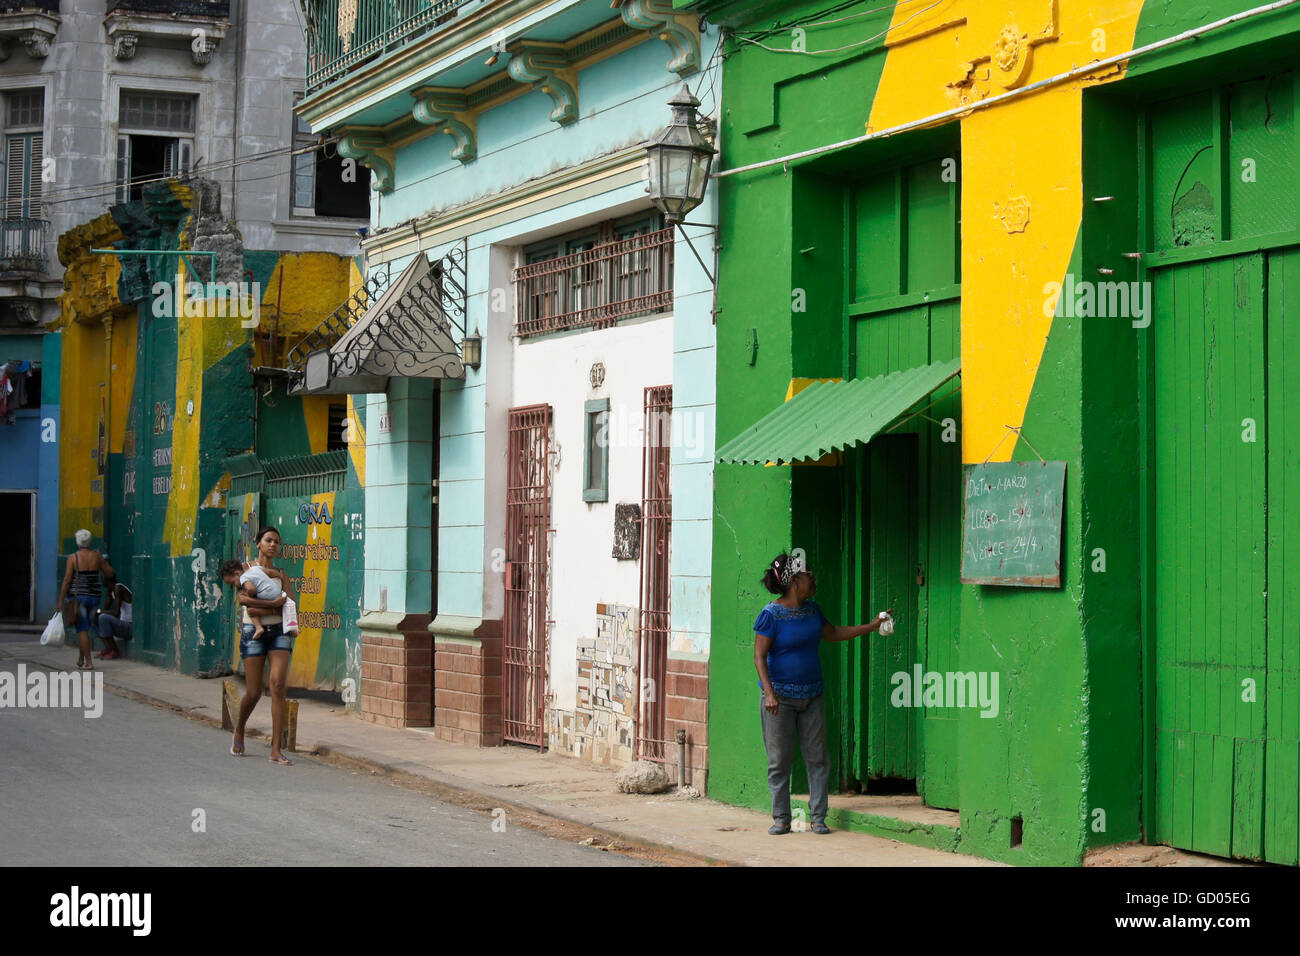 Bâtiments colorés dans Habana Vieja (la vieille Havane), Cuba Banque D'Images